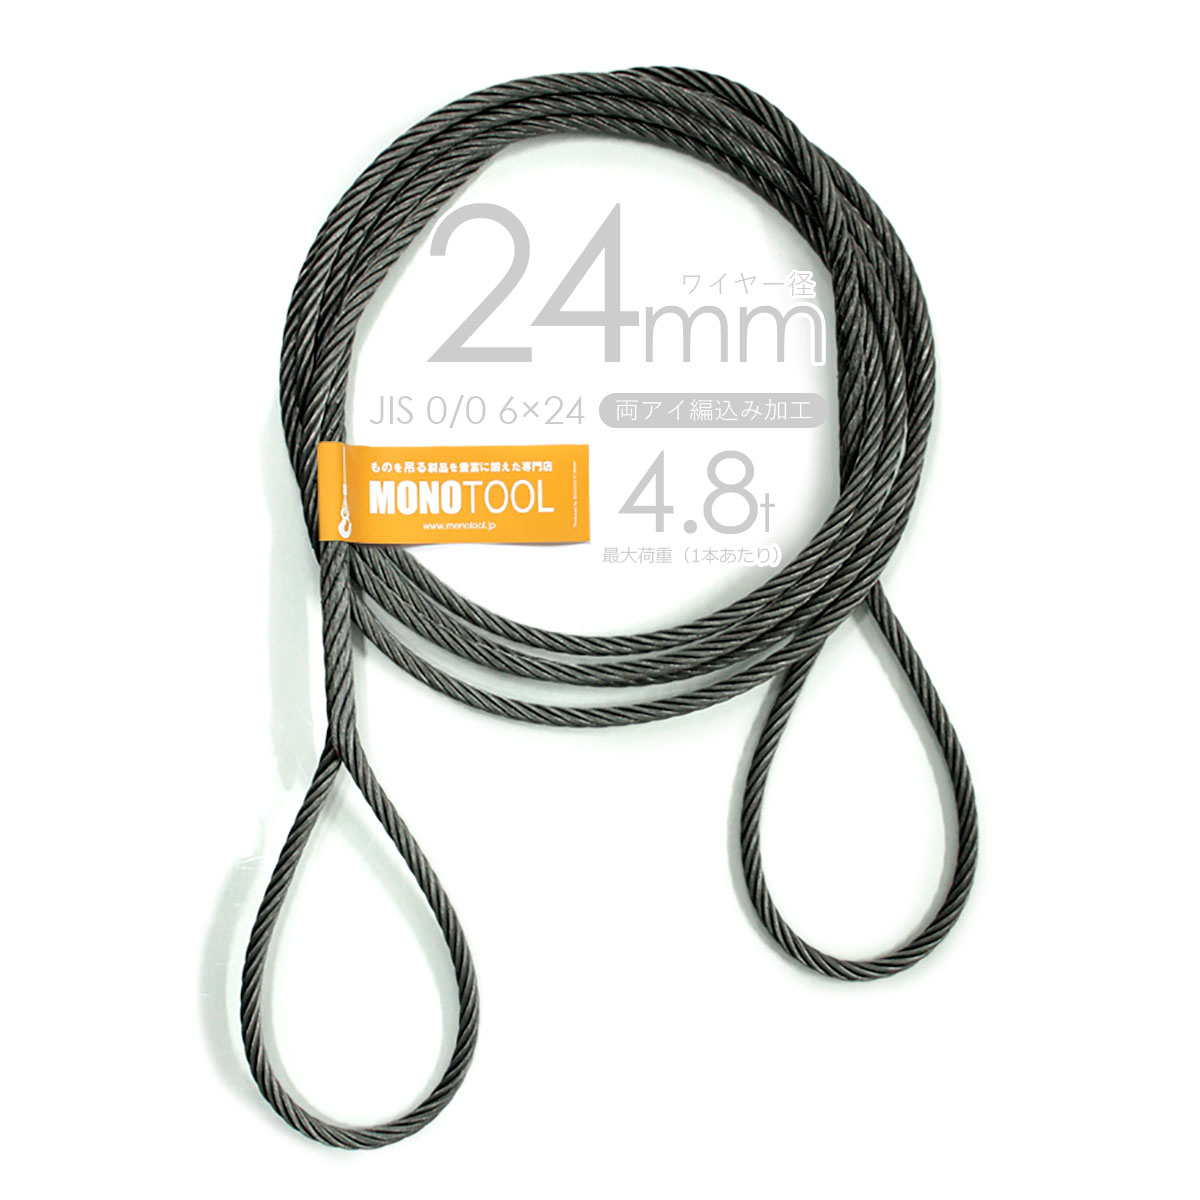 返品交換不可】 玉掛けワイヤーロープ 10本組 両アイロック加工 黒 O 24mmx3.5m JISワイヤーロープ